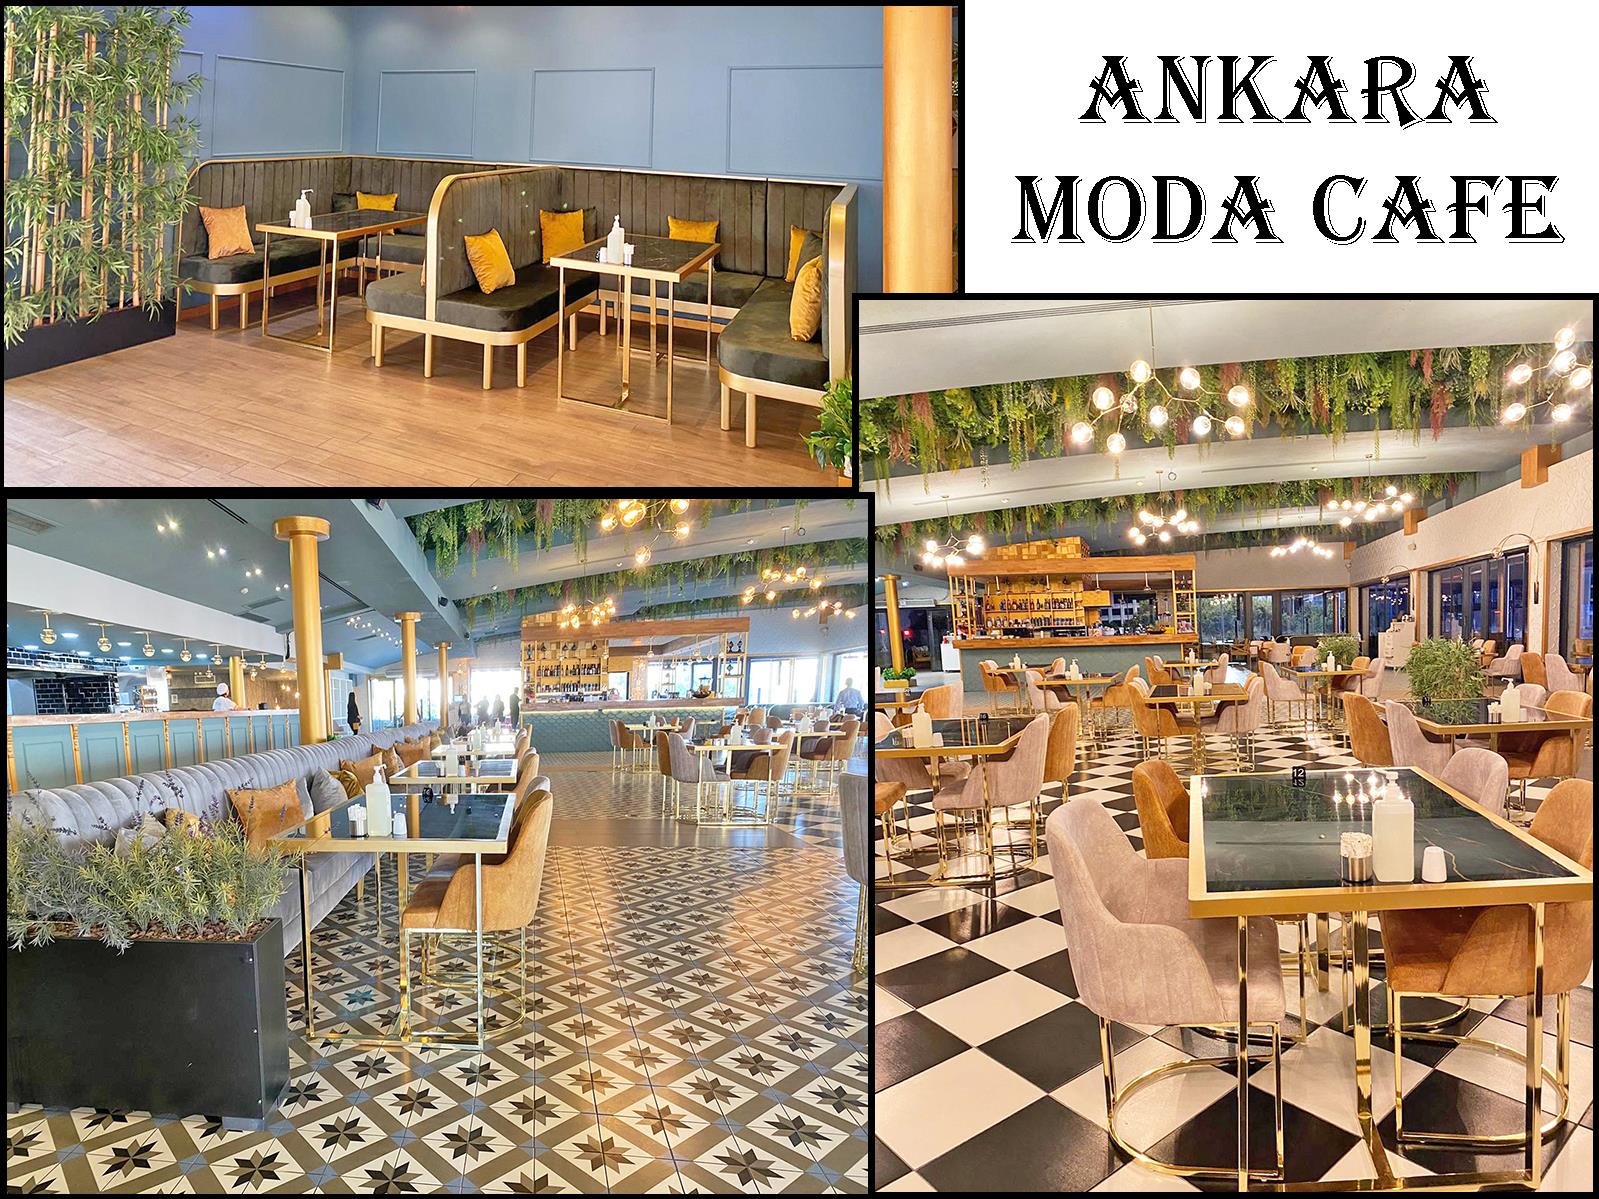 ANKARA MODA - CAFE